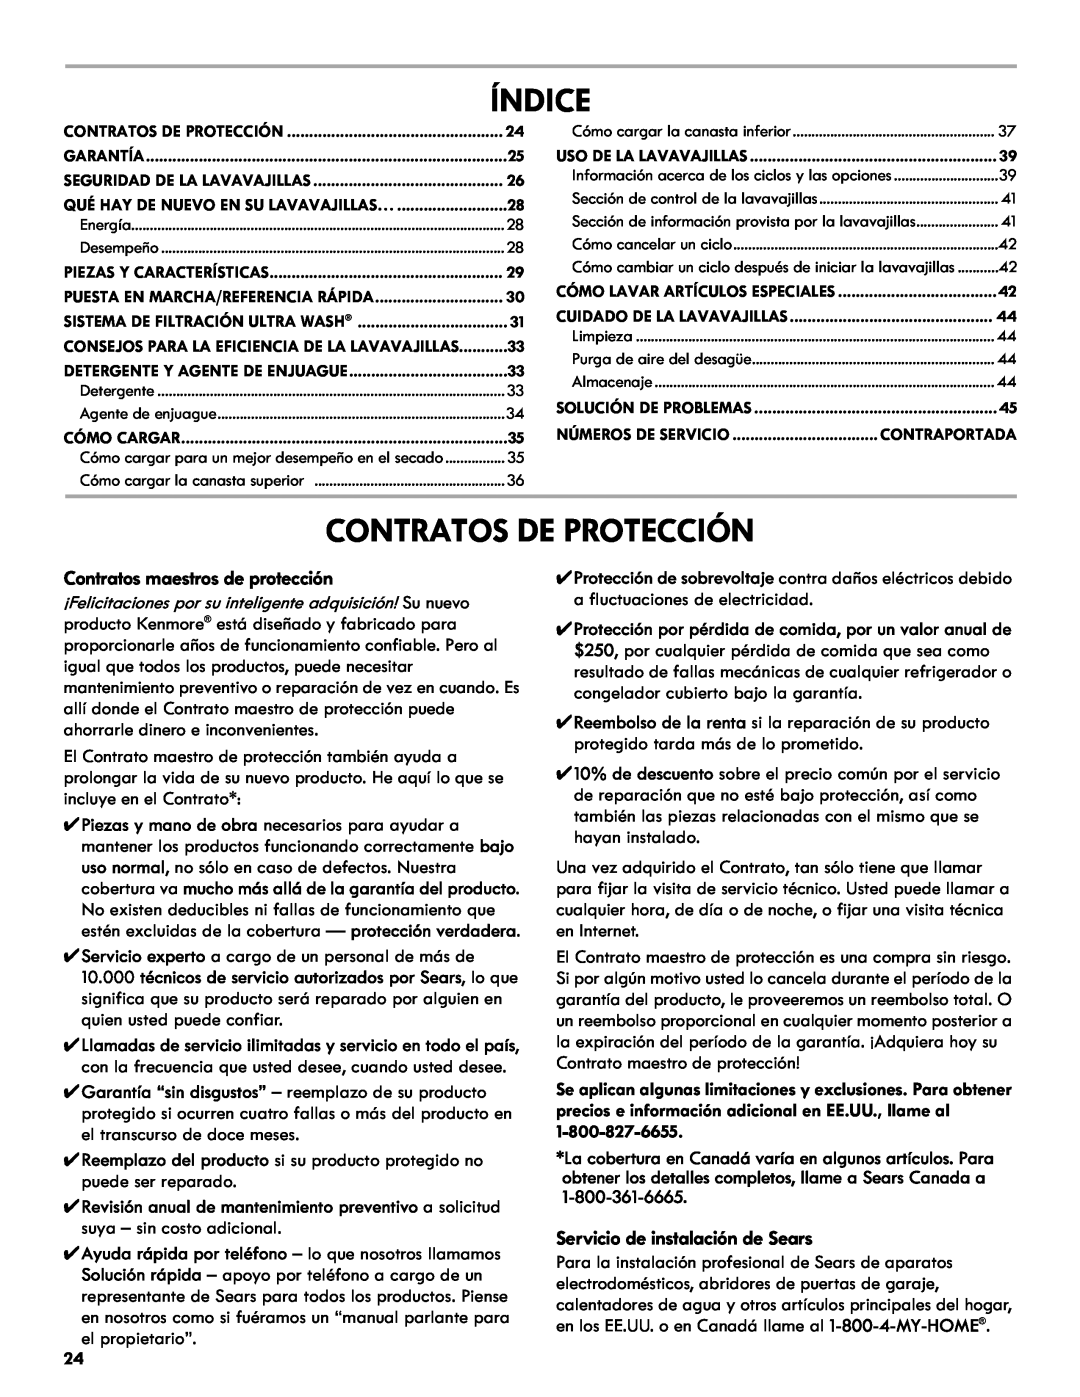 Kenmore 665.1301 manual Índice, Contratos De Protección, Contratos maestros de protección, Servicio de instalación de Sears 